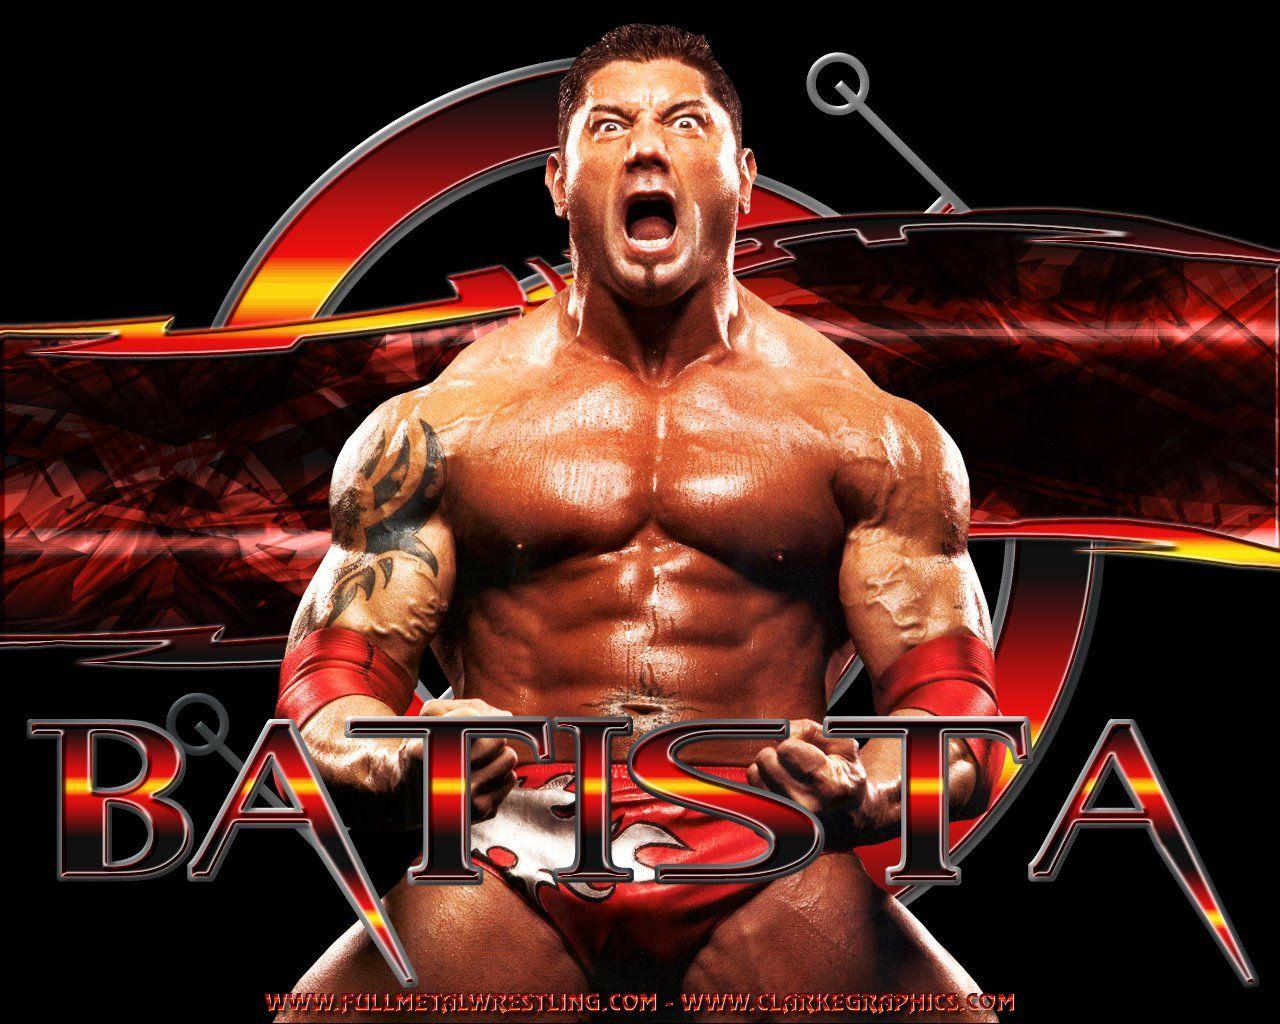 WWE Batista HD Wallpaper: WWE Batista The Animal Wallpaper